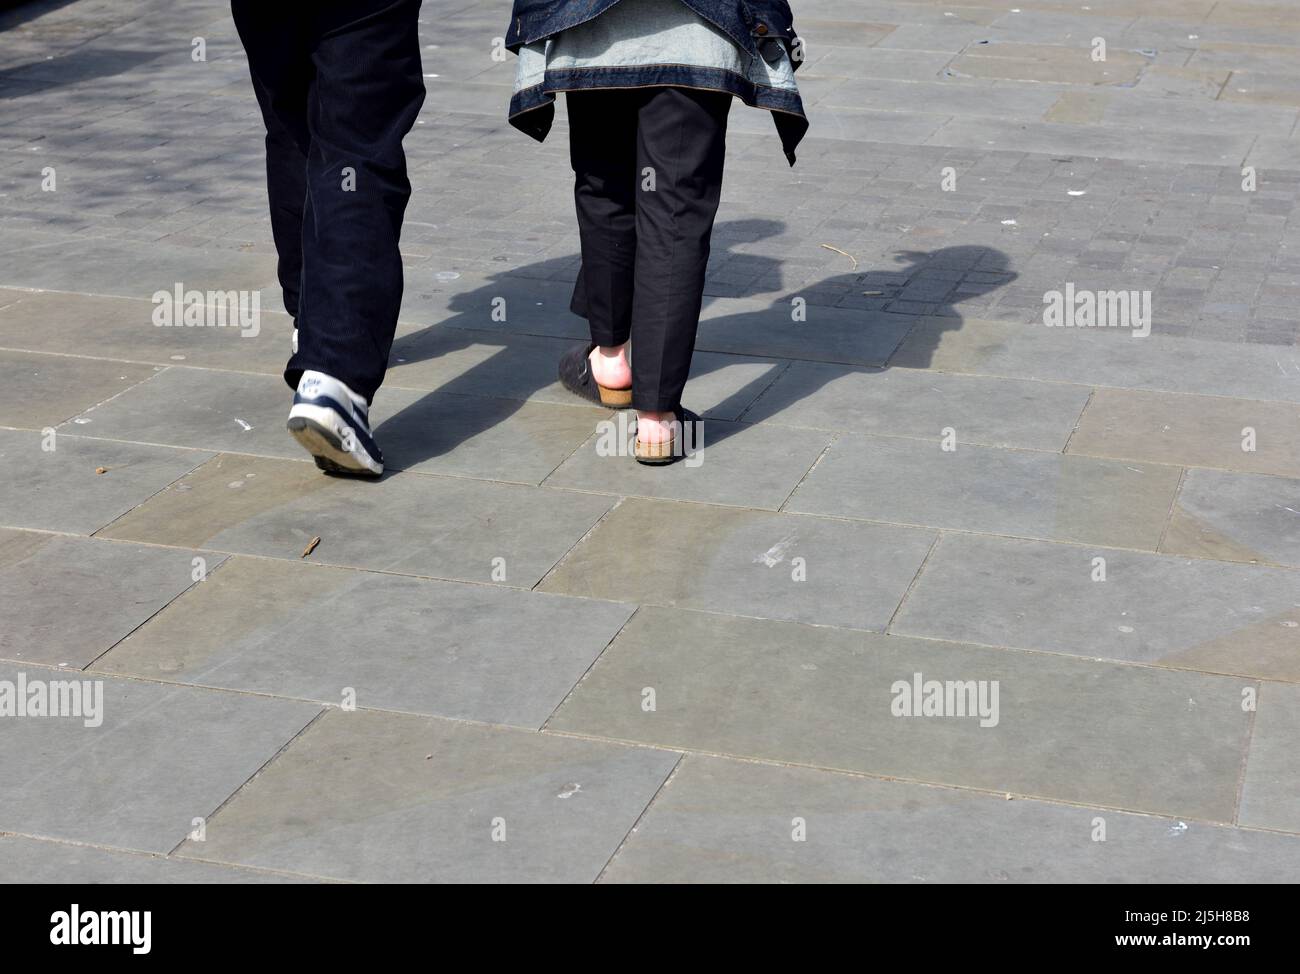 Beine von zwei Personen, die weggehen Stockfoto